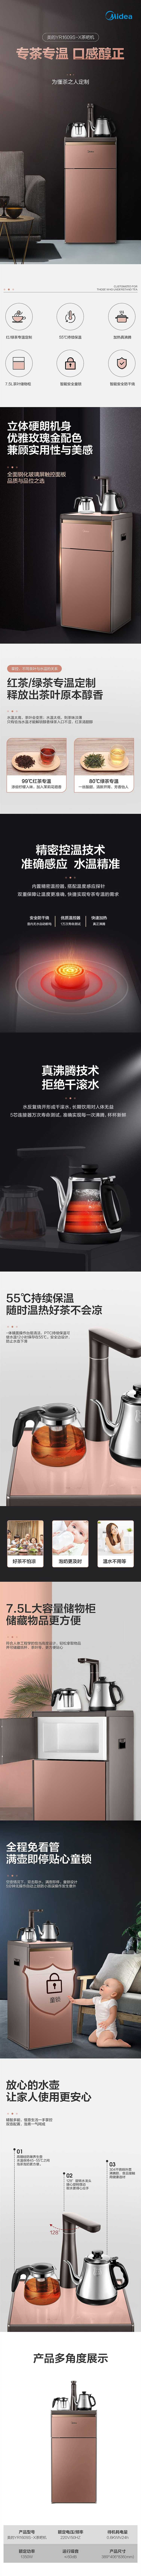 美的/MIDEA 饮水机茶香茶吧机家用下置式多功能智能自主控温饮水机YR1609S-X